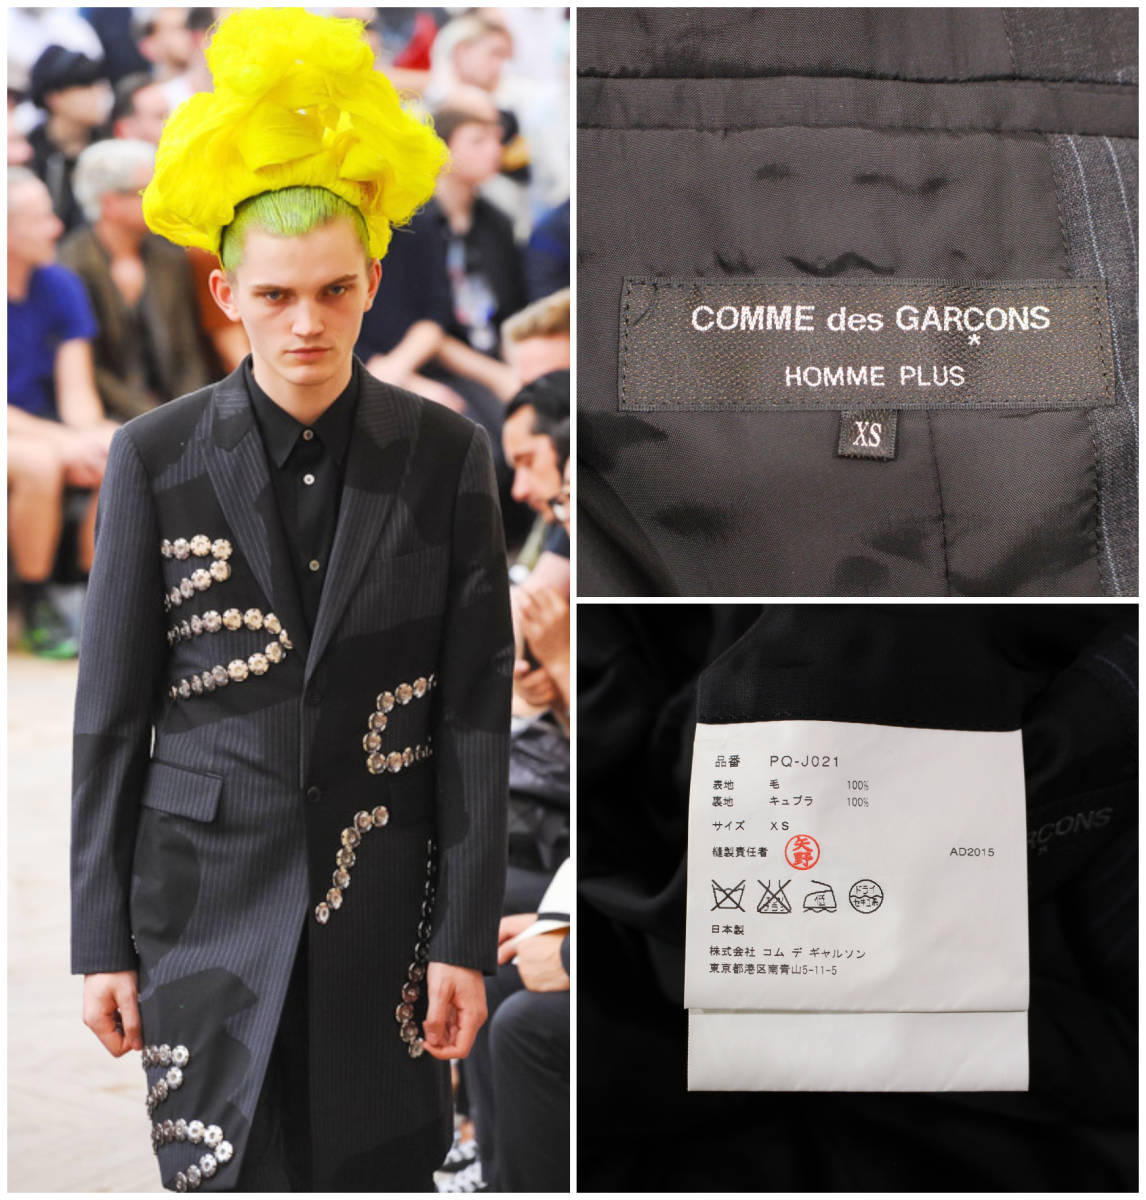 COMME des GARCONS HOMME PLUS/ Comme des Garcons Homme pryus/2016ss/ button equipment ornament long jacket / stripe / size XS